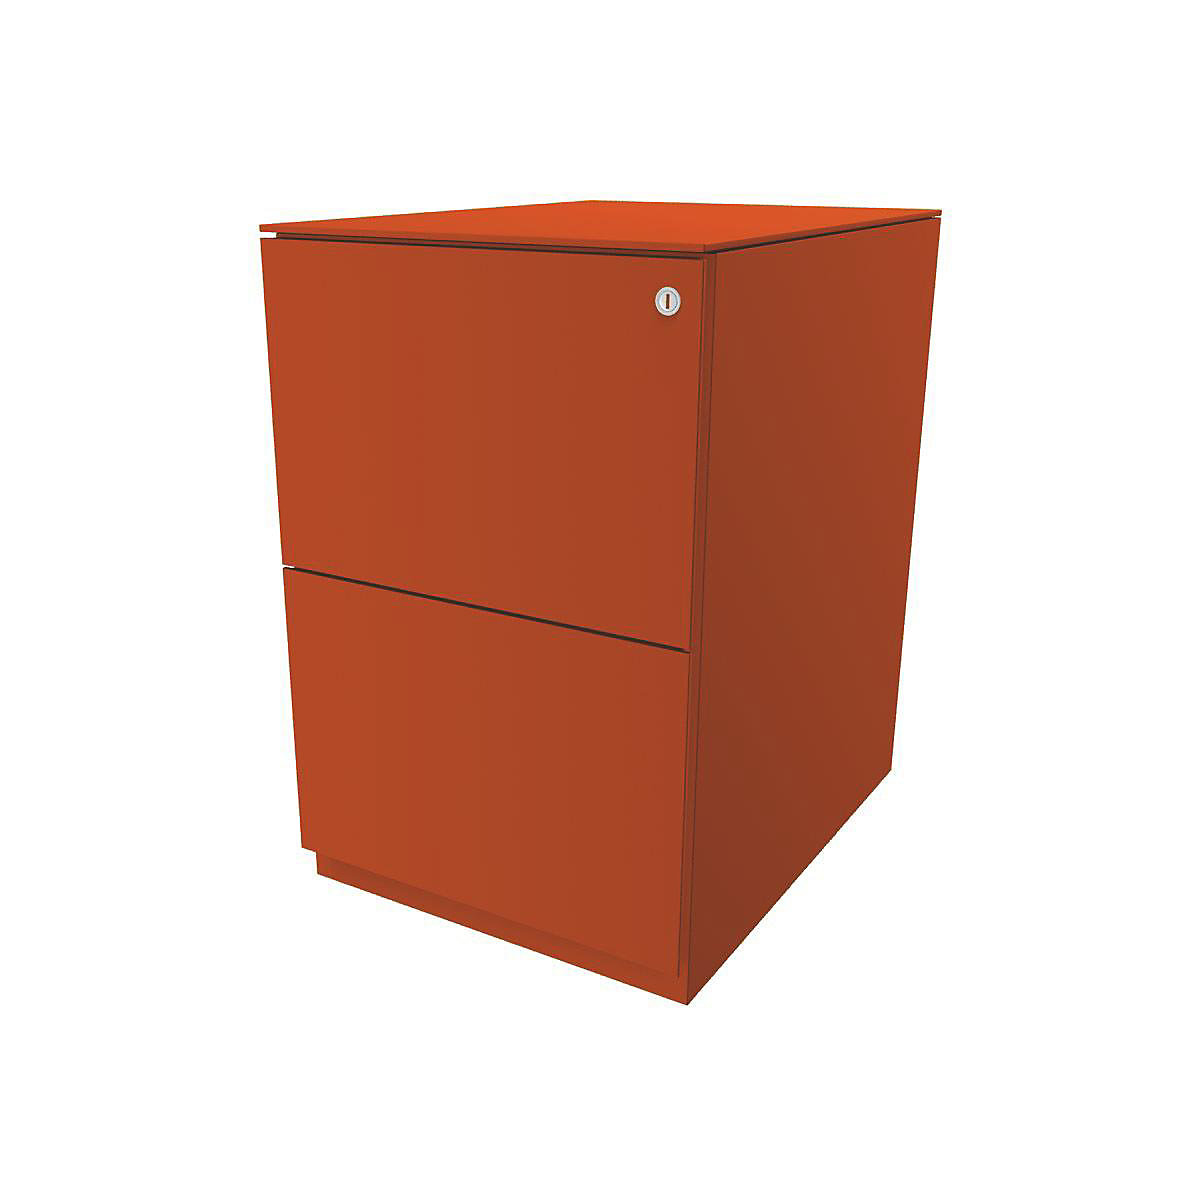 Pojízdný kontejner Note™, se 2 kartotékami pro závěsné složky – BISLEY, v x š 652 x 420 mm, s horní krycí deskou, oranžová-3